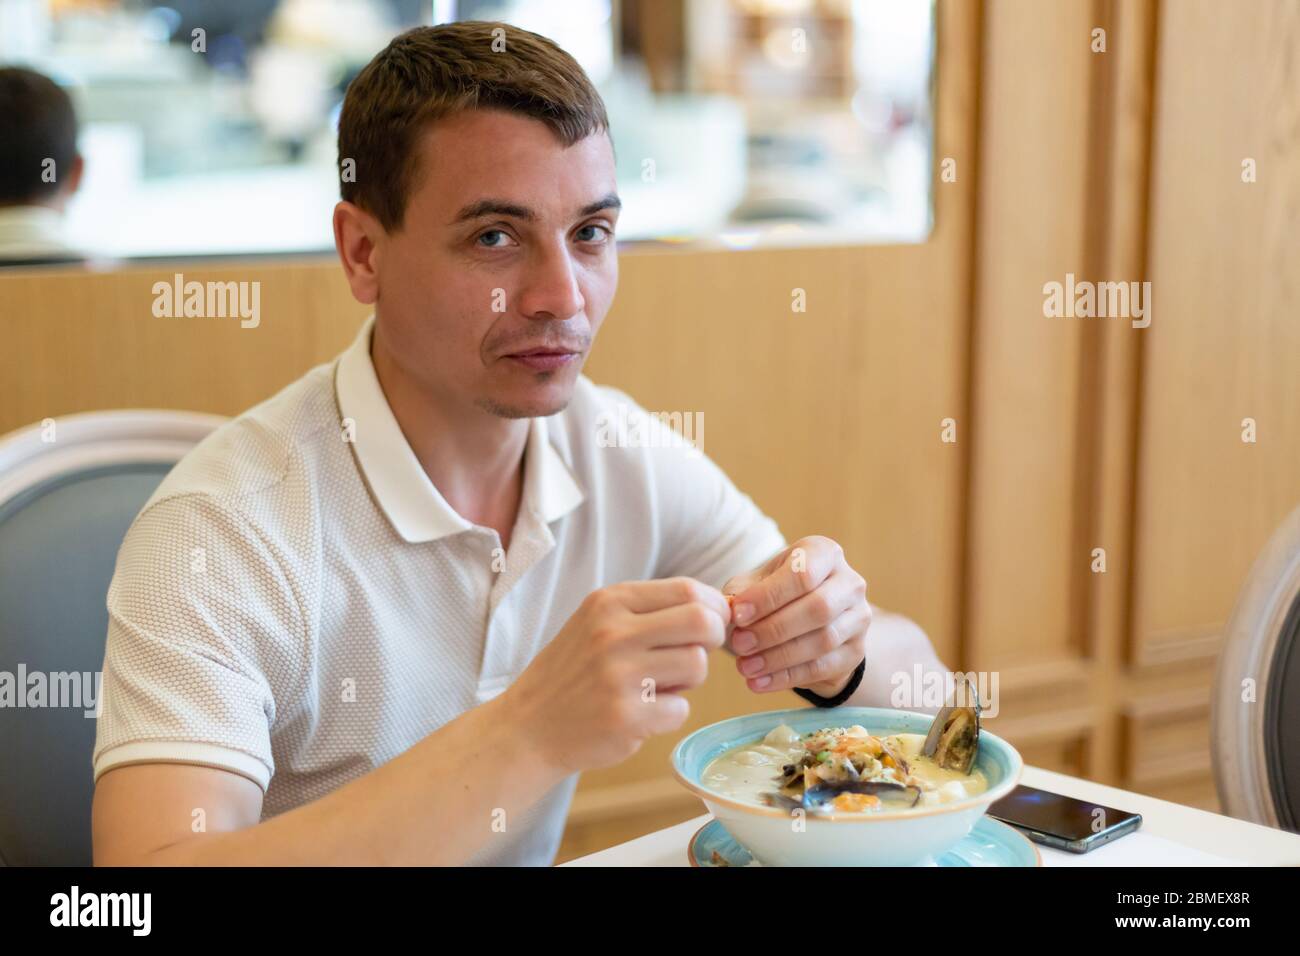 Ein erwachsener Europäer von 30-35 Jahren isst in einem Restaurant Meeresfrüchte-Suppe. Stockfoto